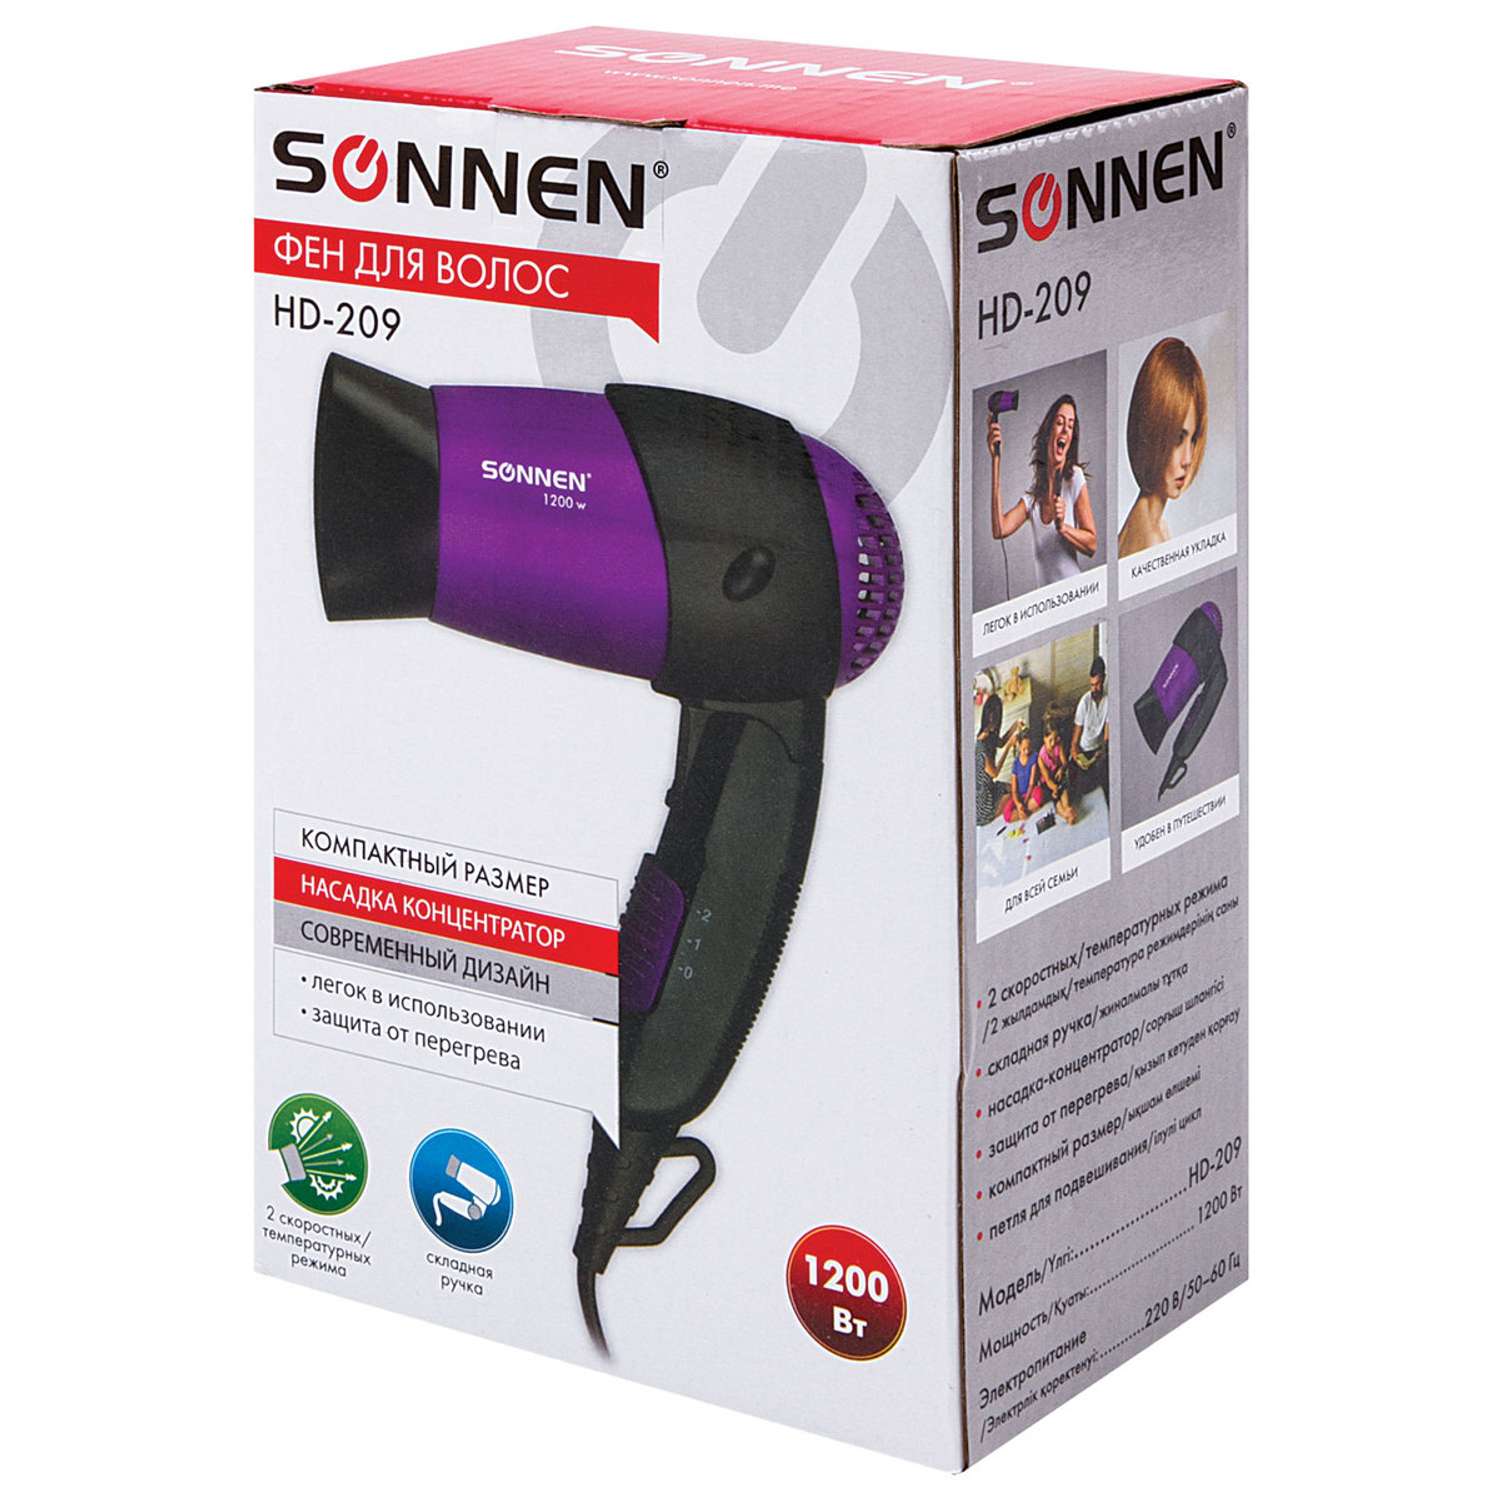 Фен Sonnen HD-209 1200Вт черный/фиолетовый - фото 34